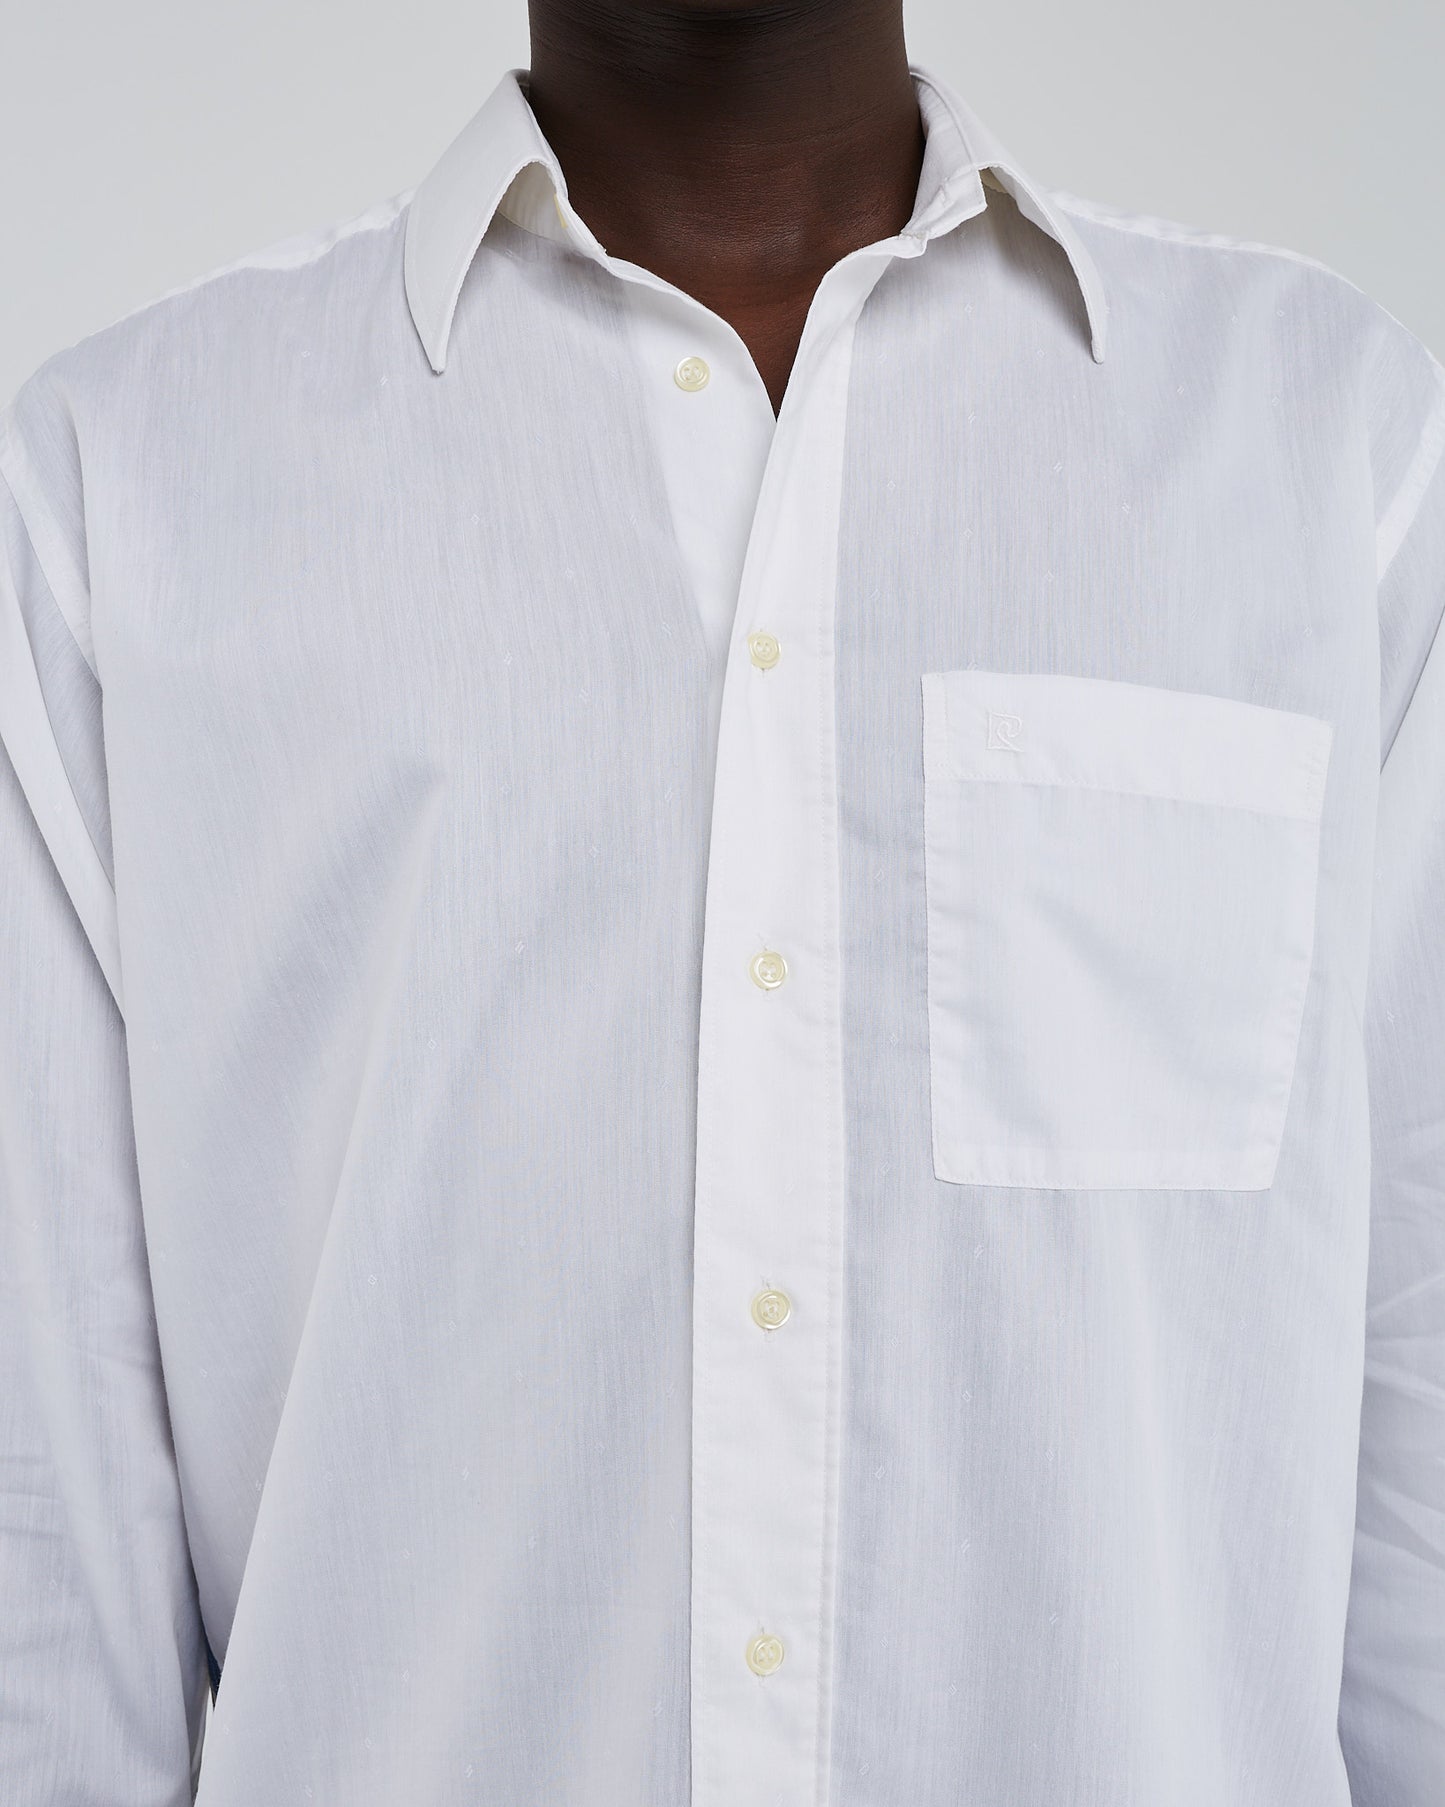 Arne patterned back shirt